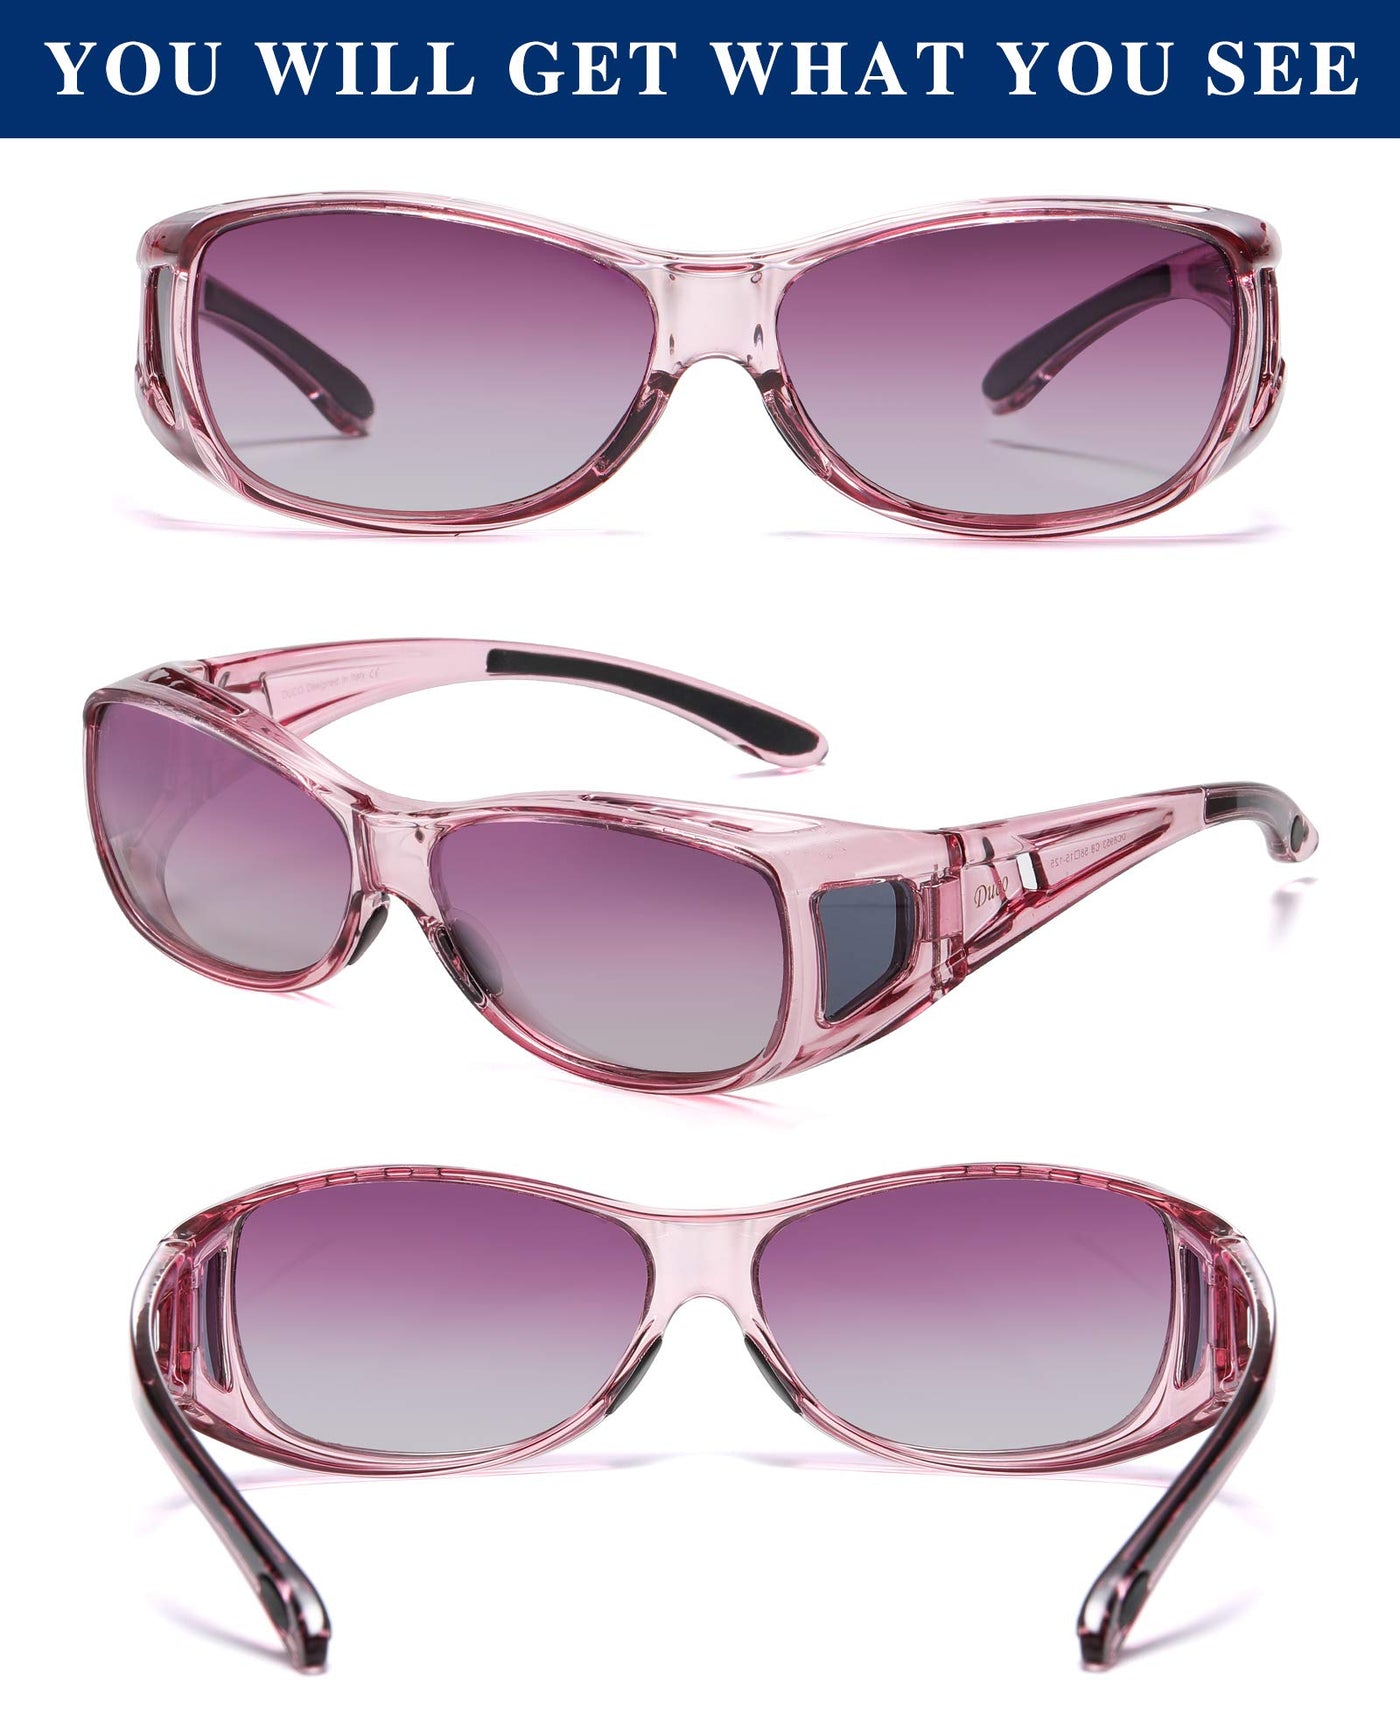 Smoke Lens OTG Fits over Glasses Sunglasses |Motorbike |Buy online @  specssports.co.uk